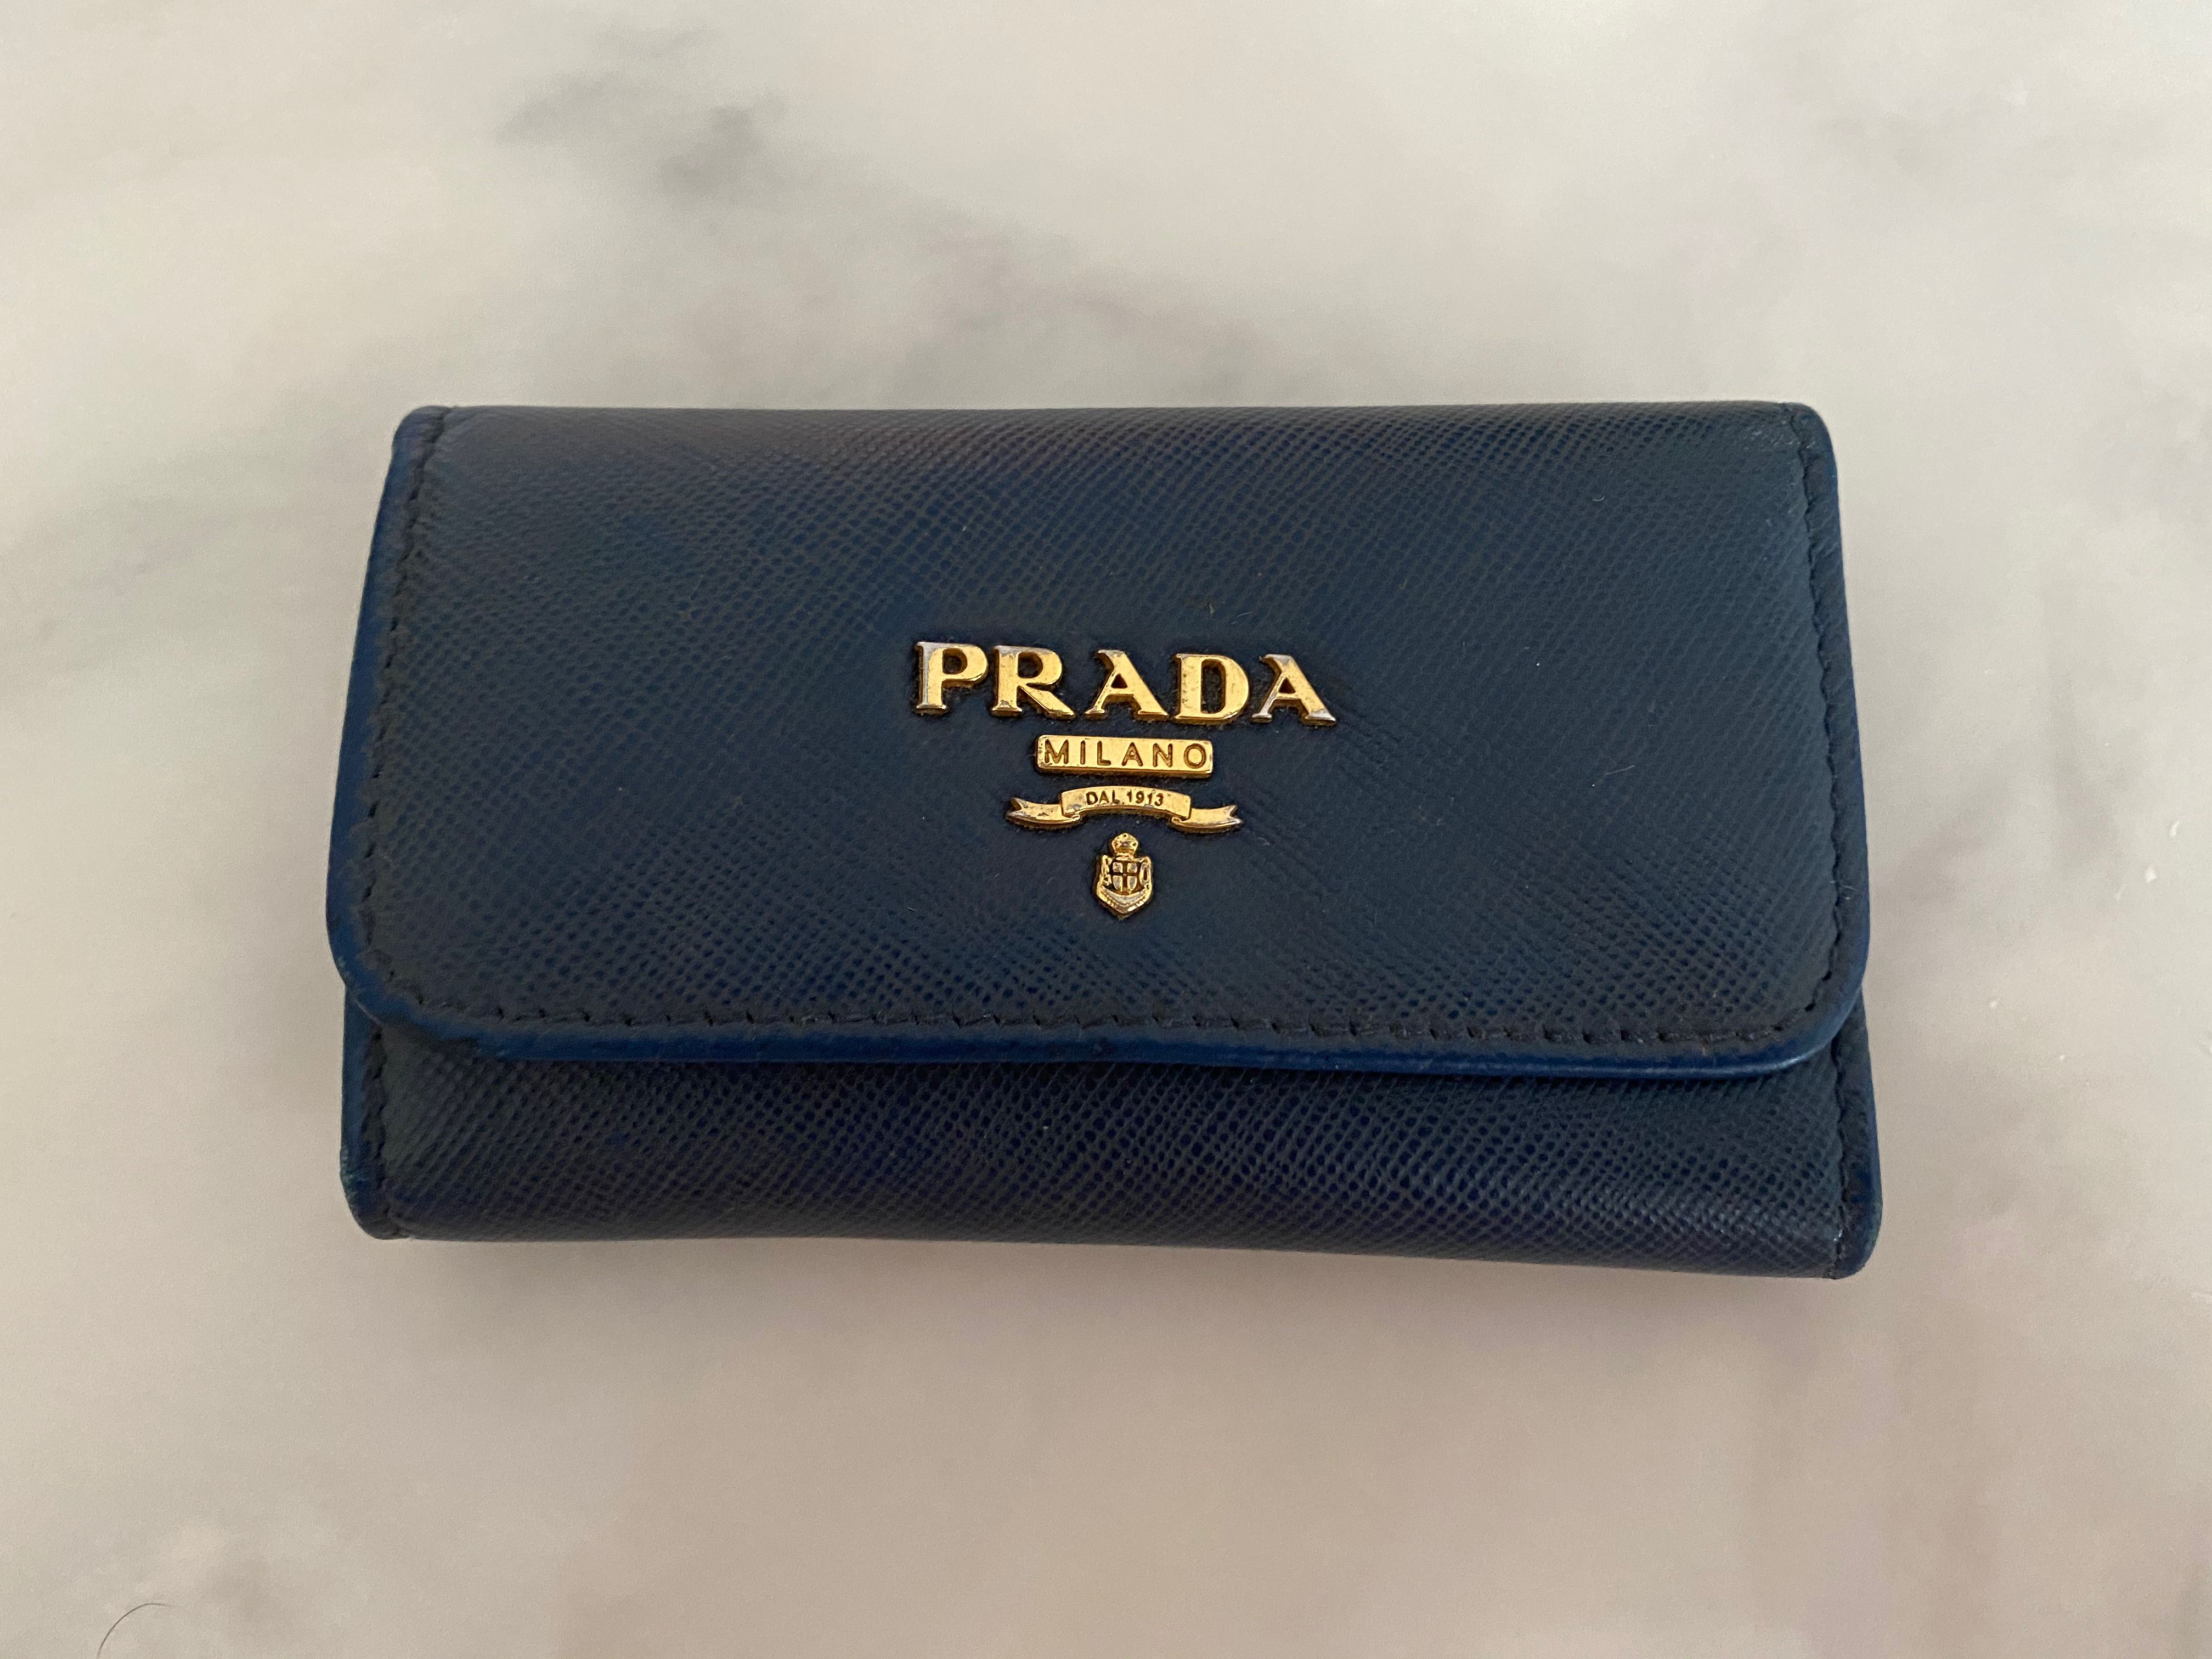 Prada key pouch, Women's Fashion, Bags & Wallets, Purses & Pouches on ...